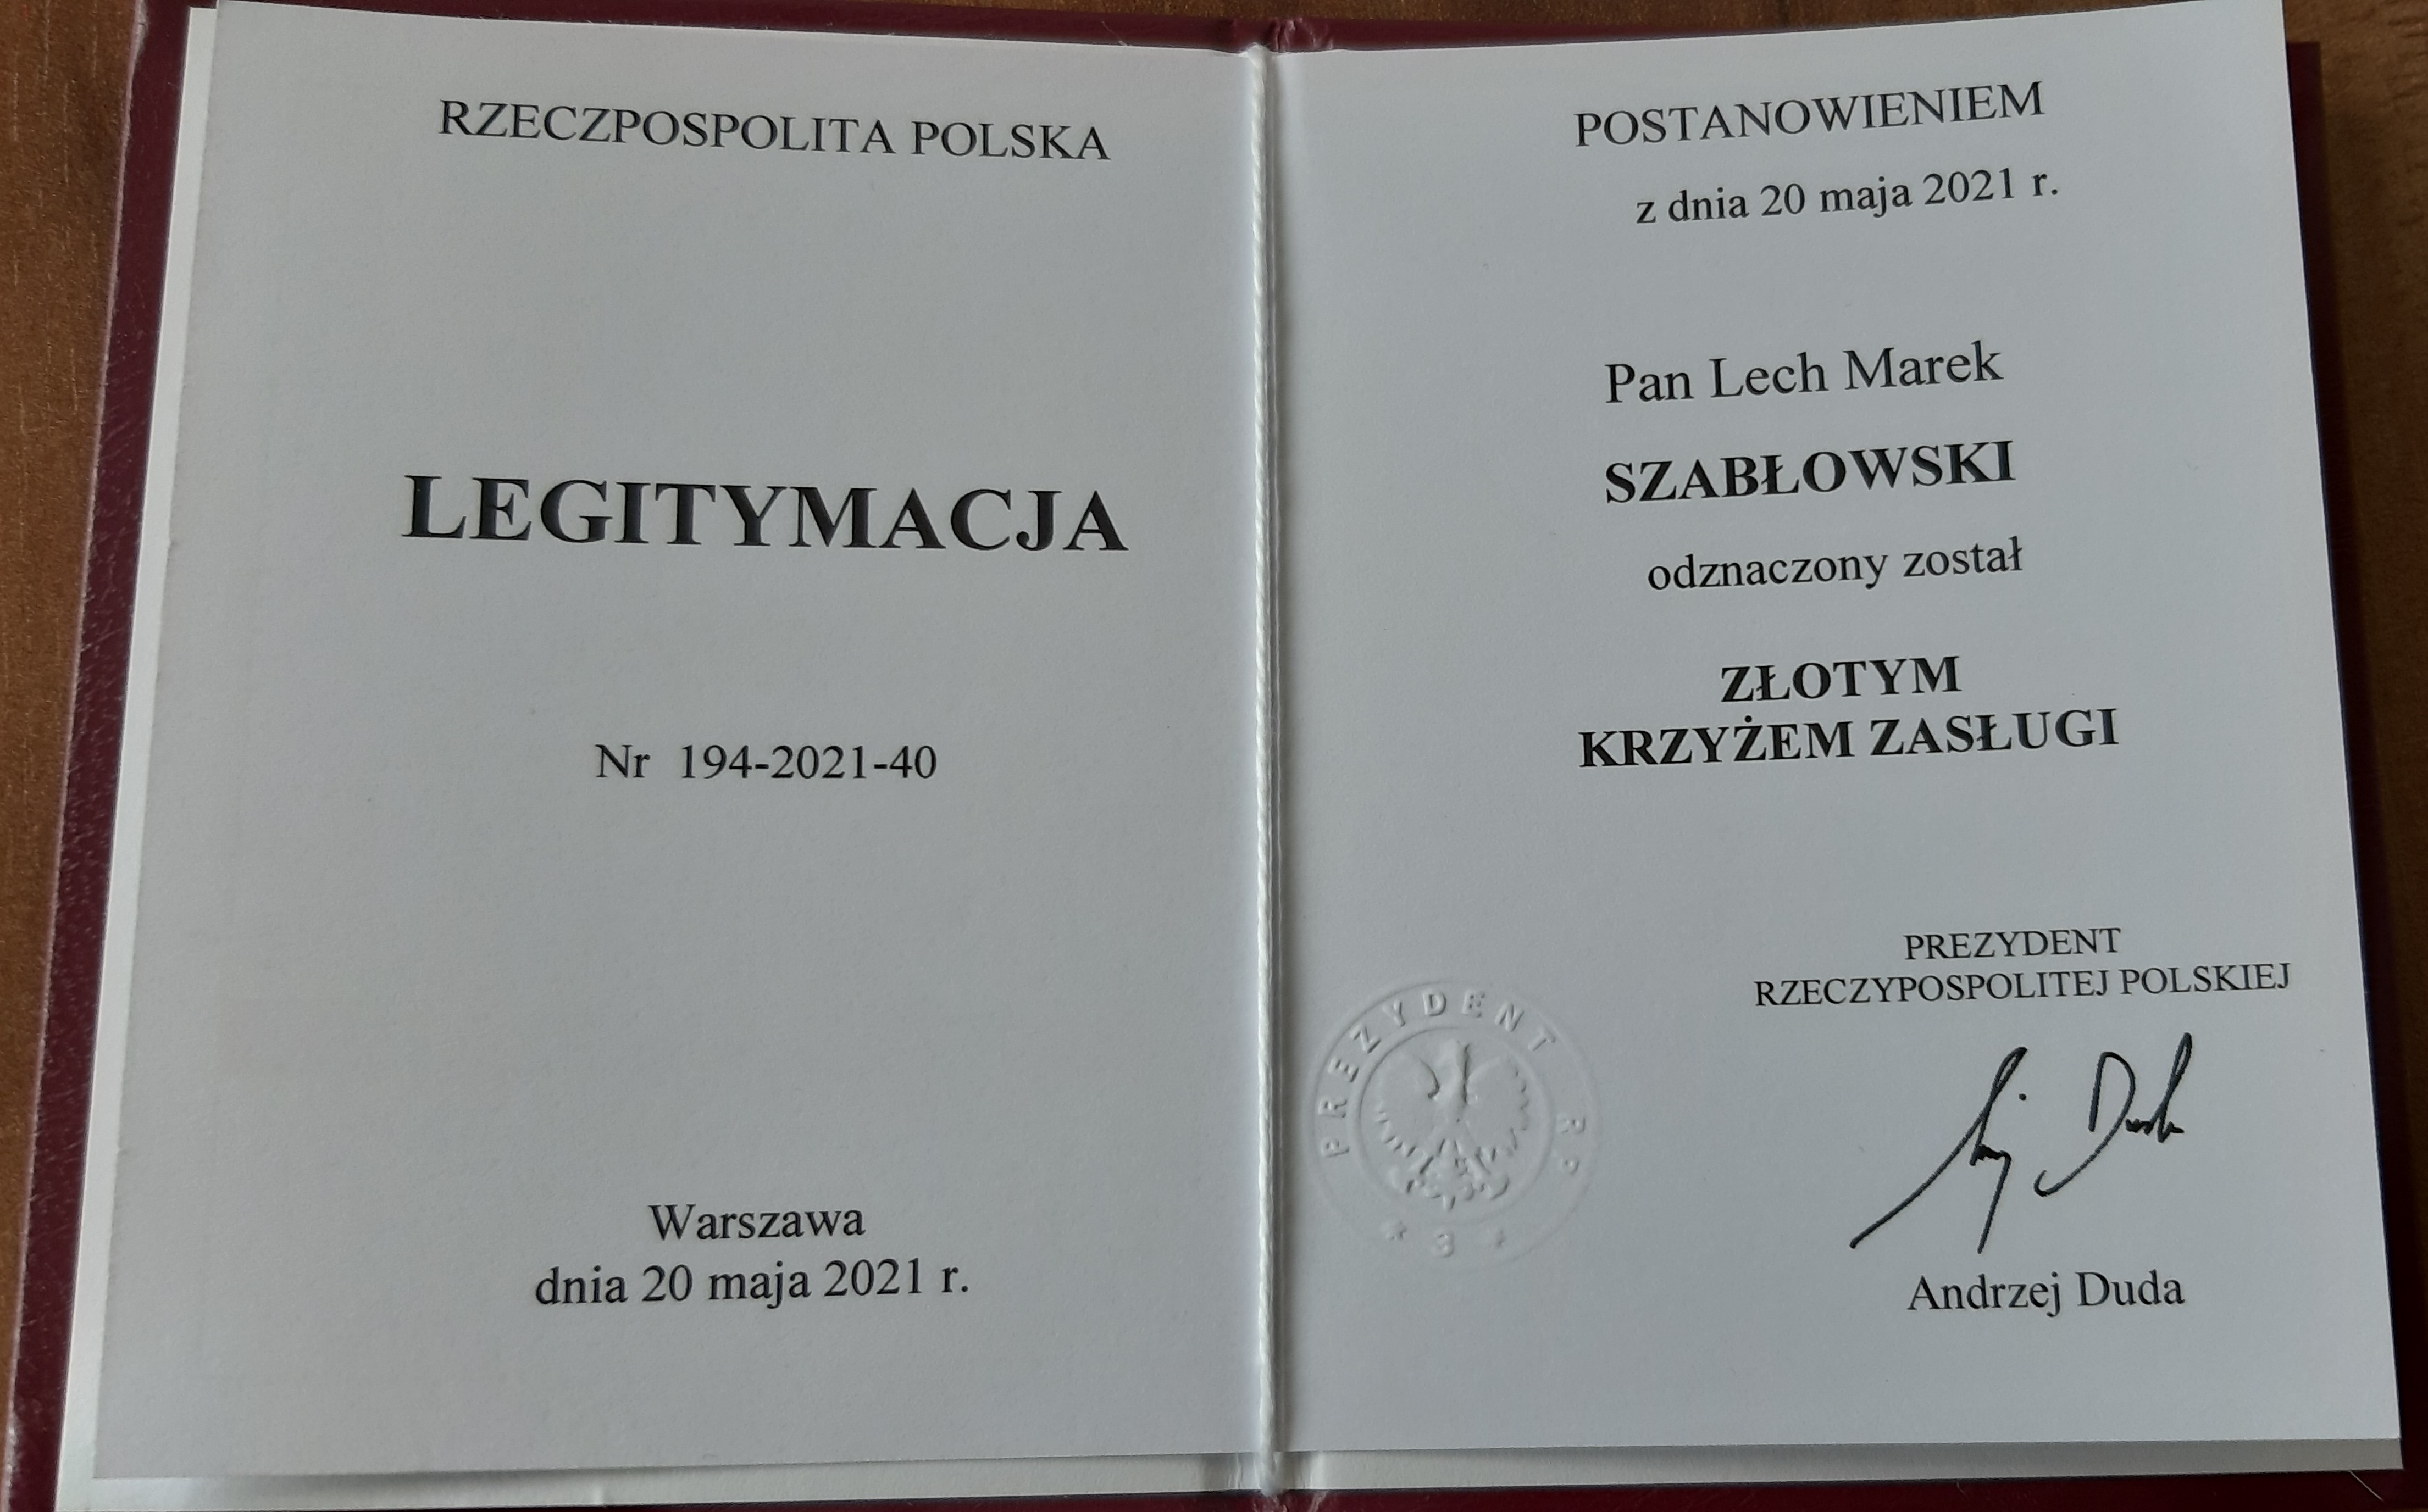 Legitymacja potwierdzająca nadanie Złotego Krzyża Zasługi dla Lecha Marka Szabłowskiego - Starosty Łomżyńskiego